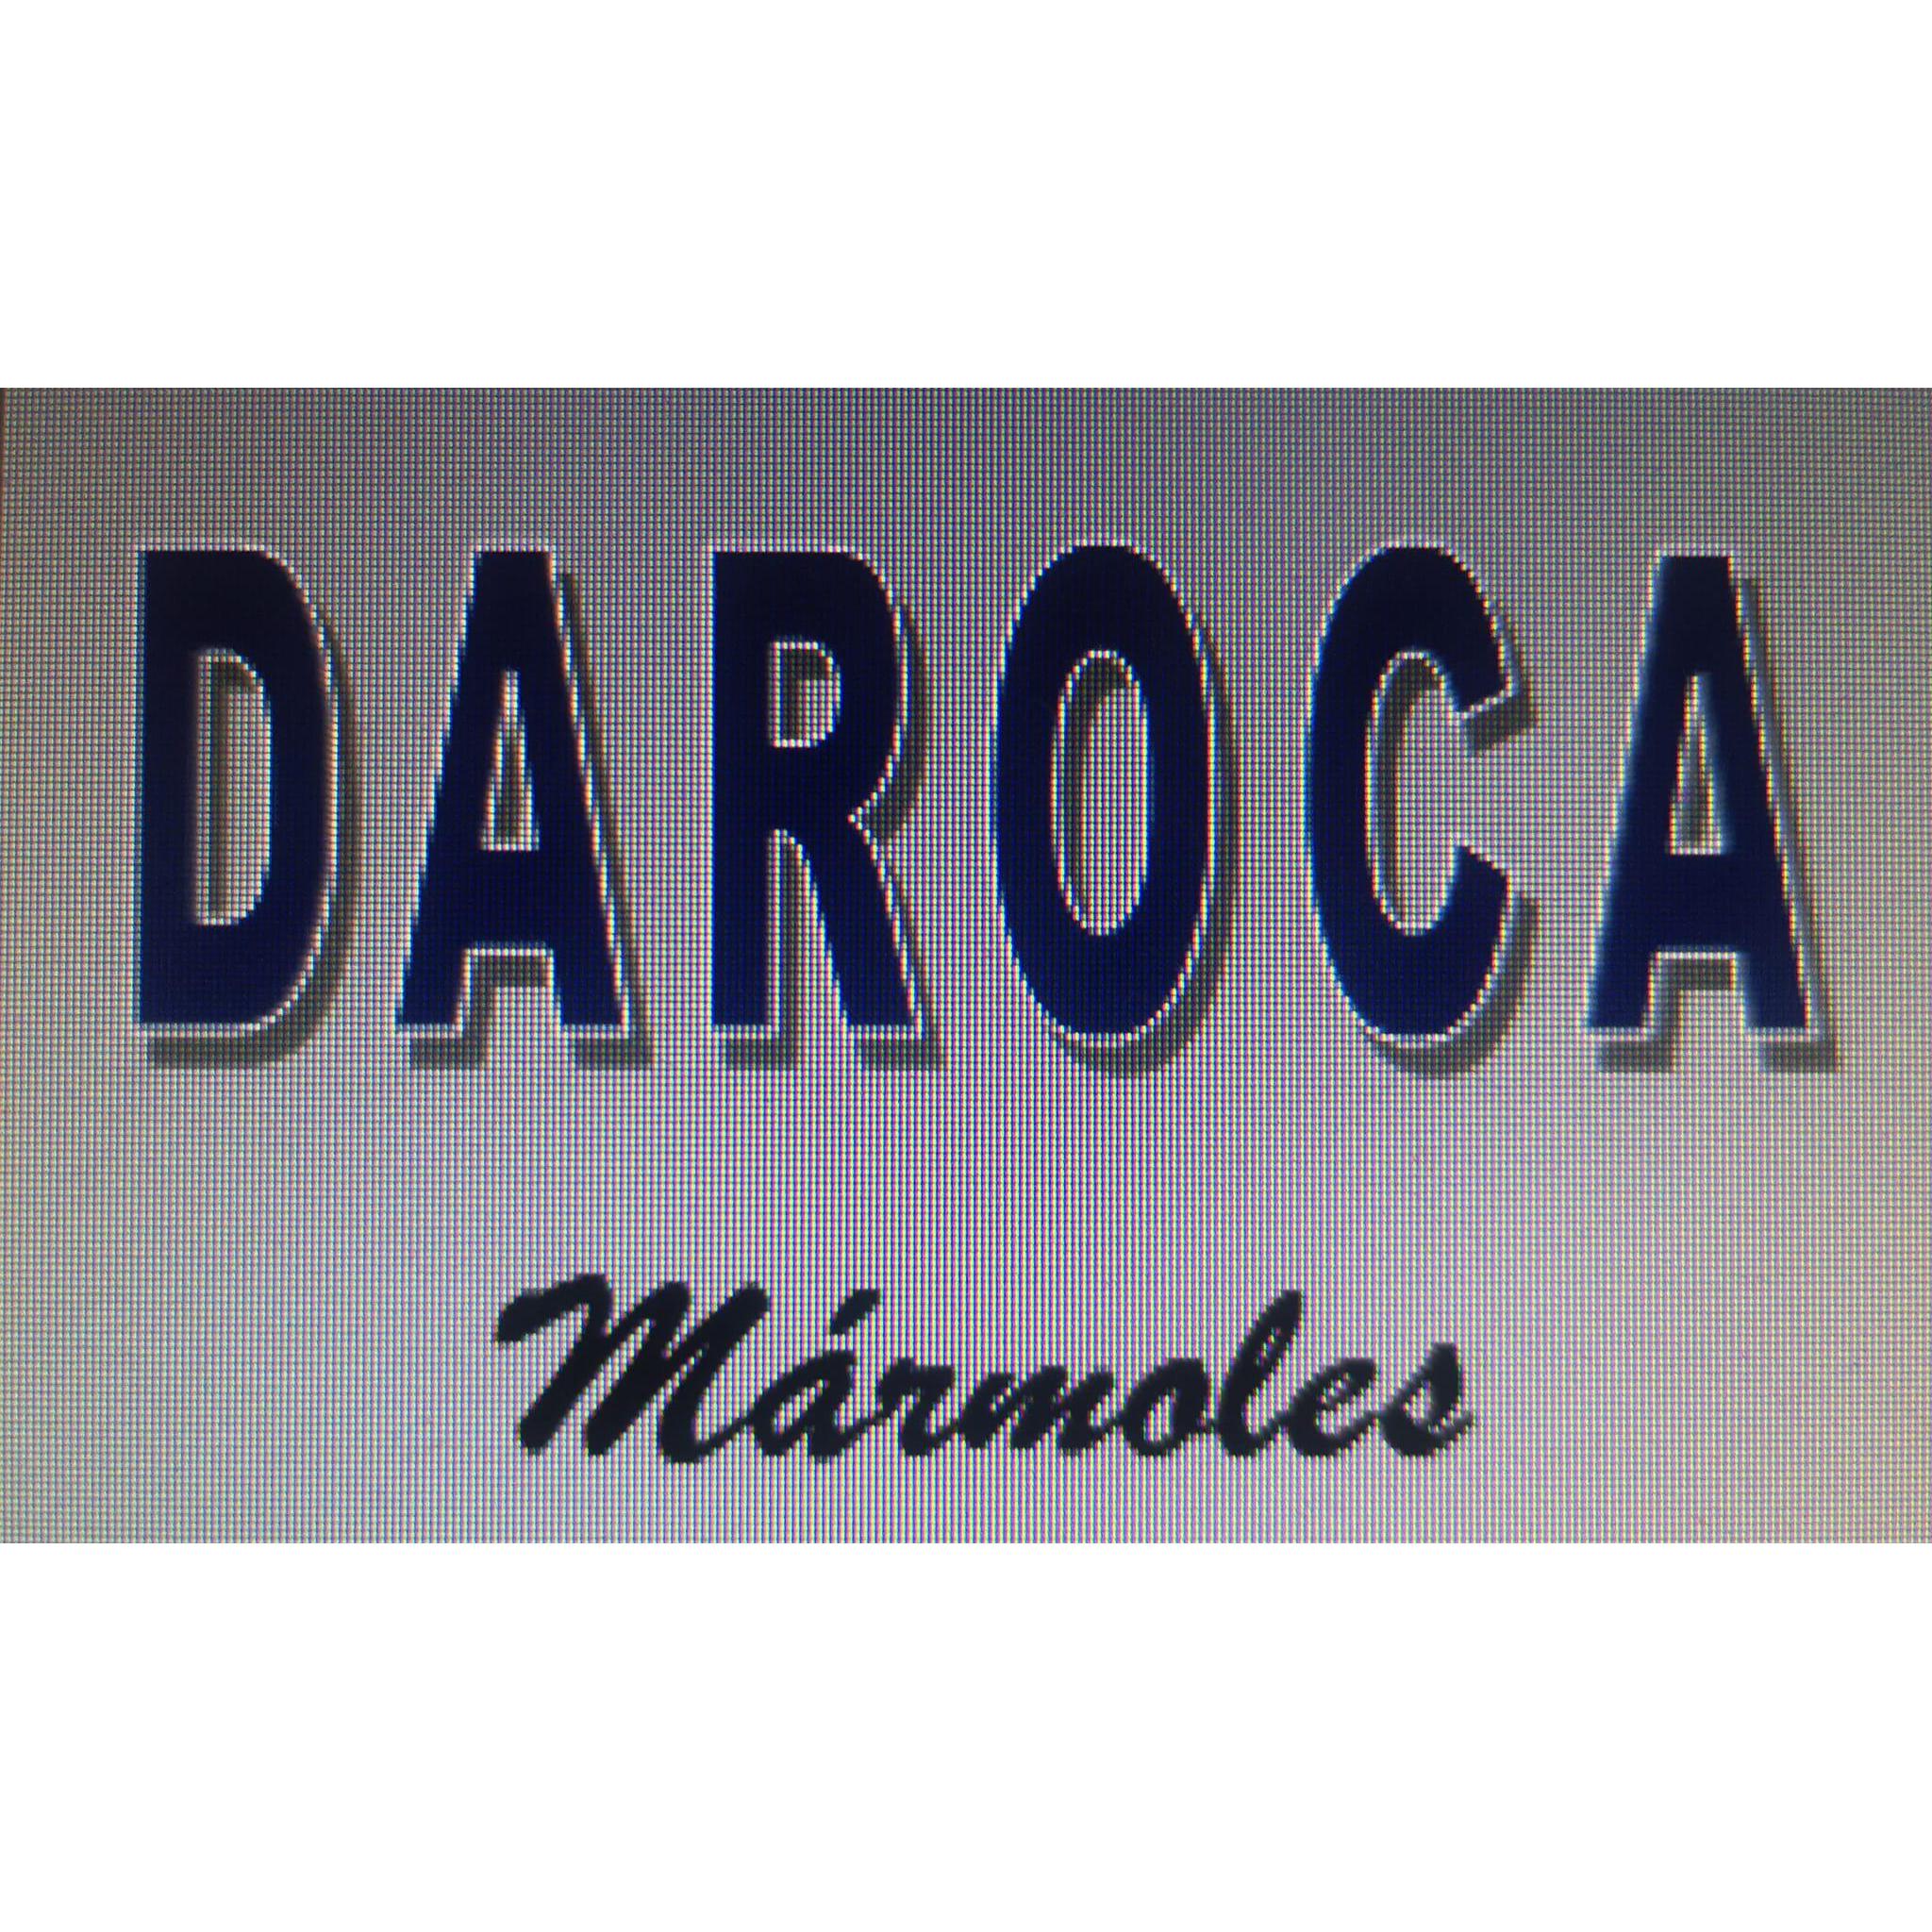 Mármoles Daroca Valencia